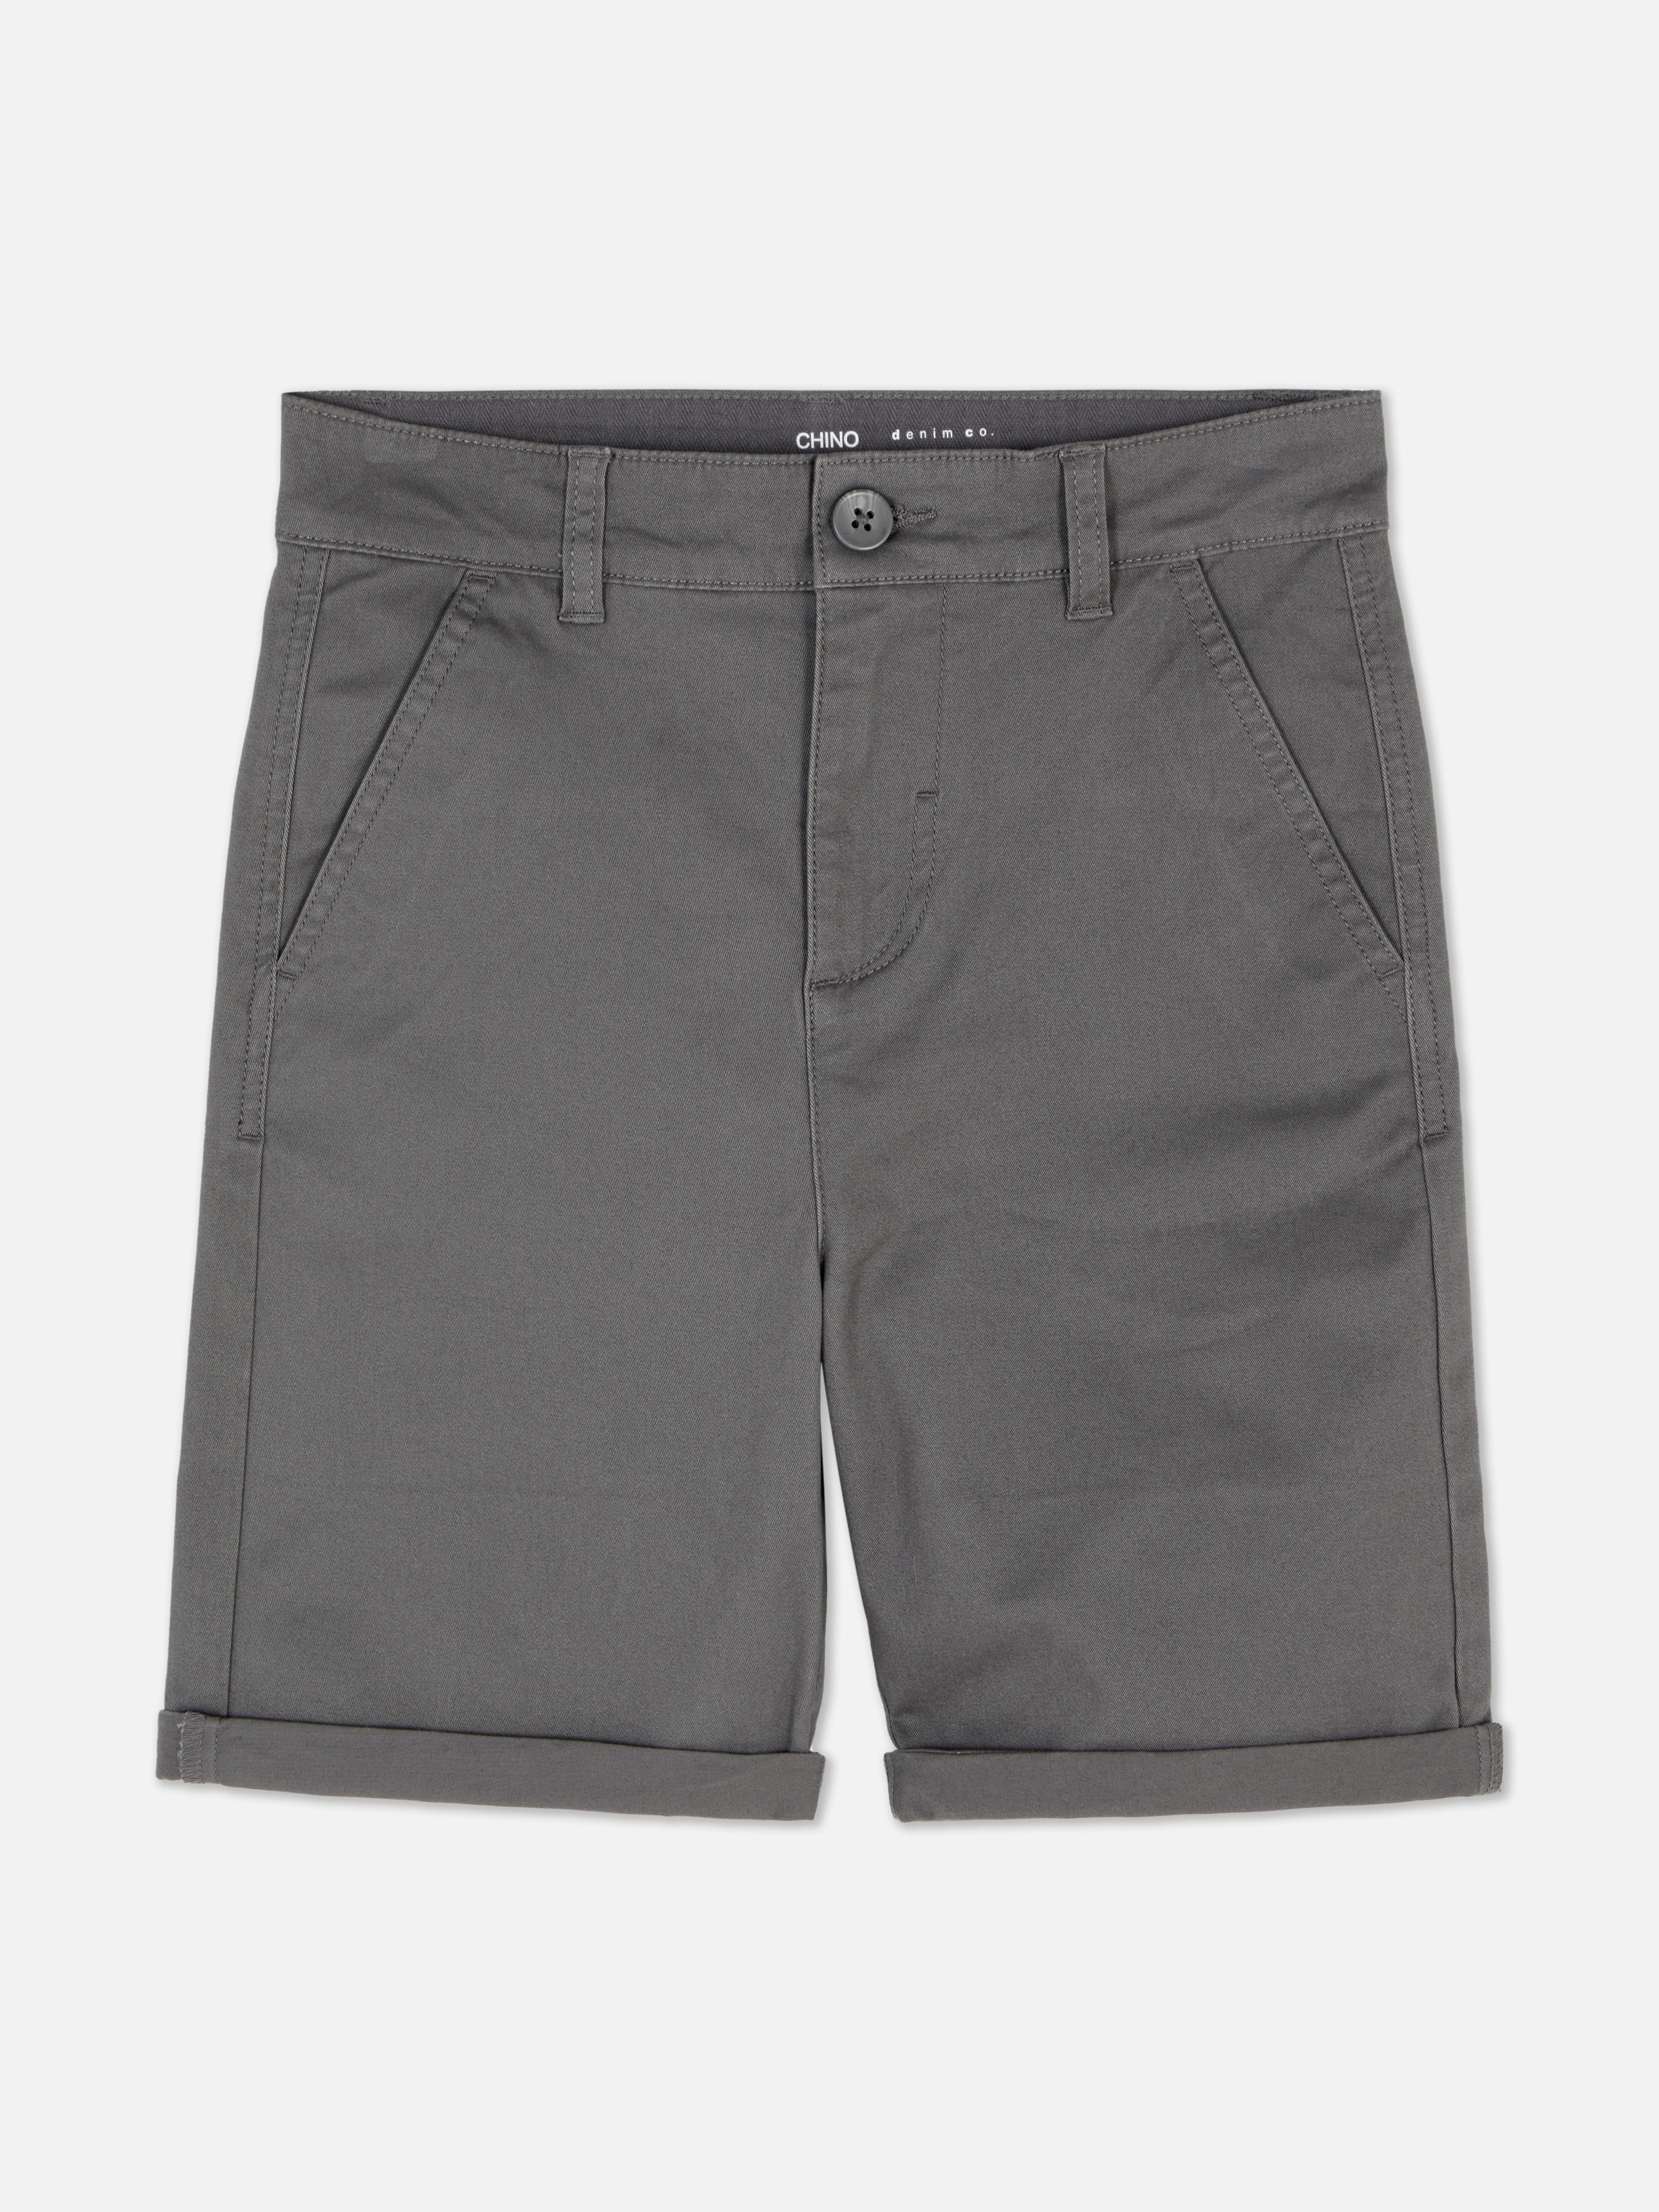 Oferta de Pantalones cortos chinos por 8€ en Primark